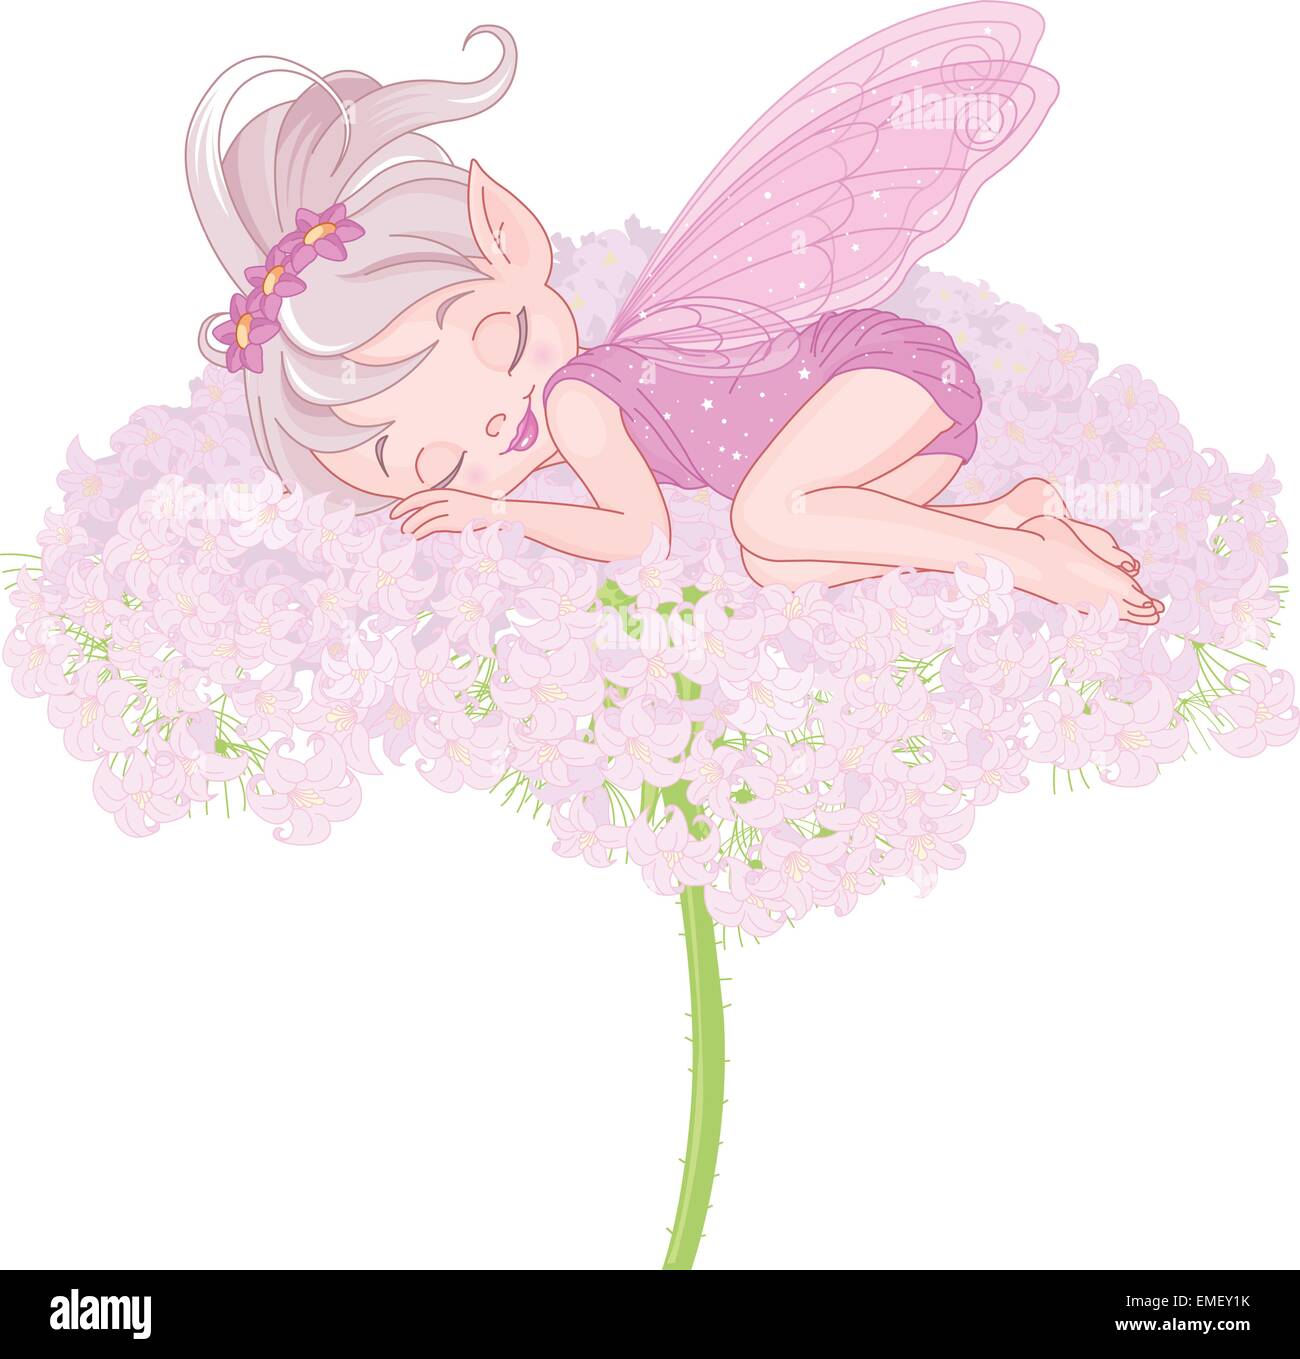 Pixy couchage Fairy Illustration de Vecteur